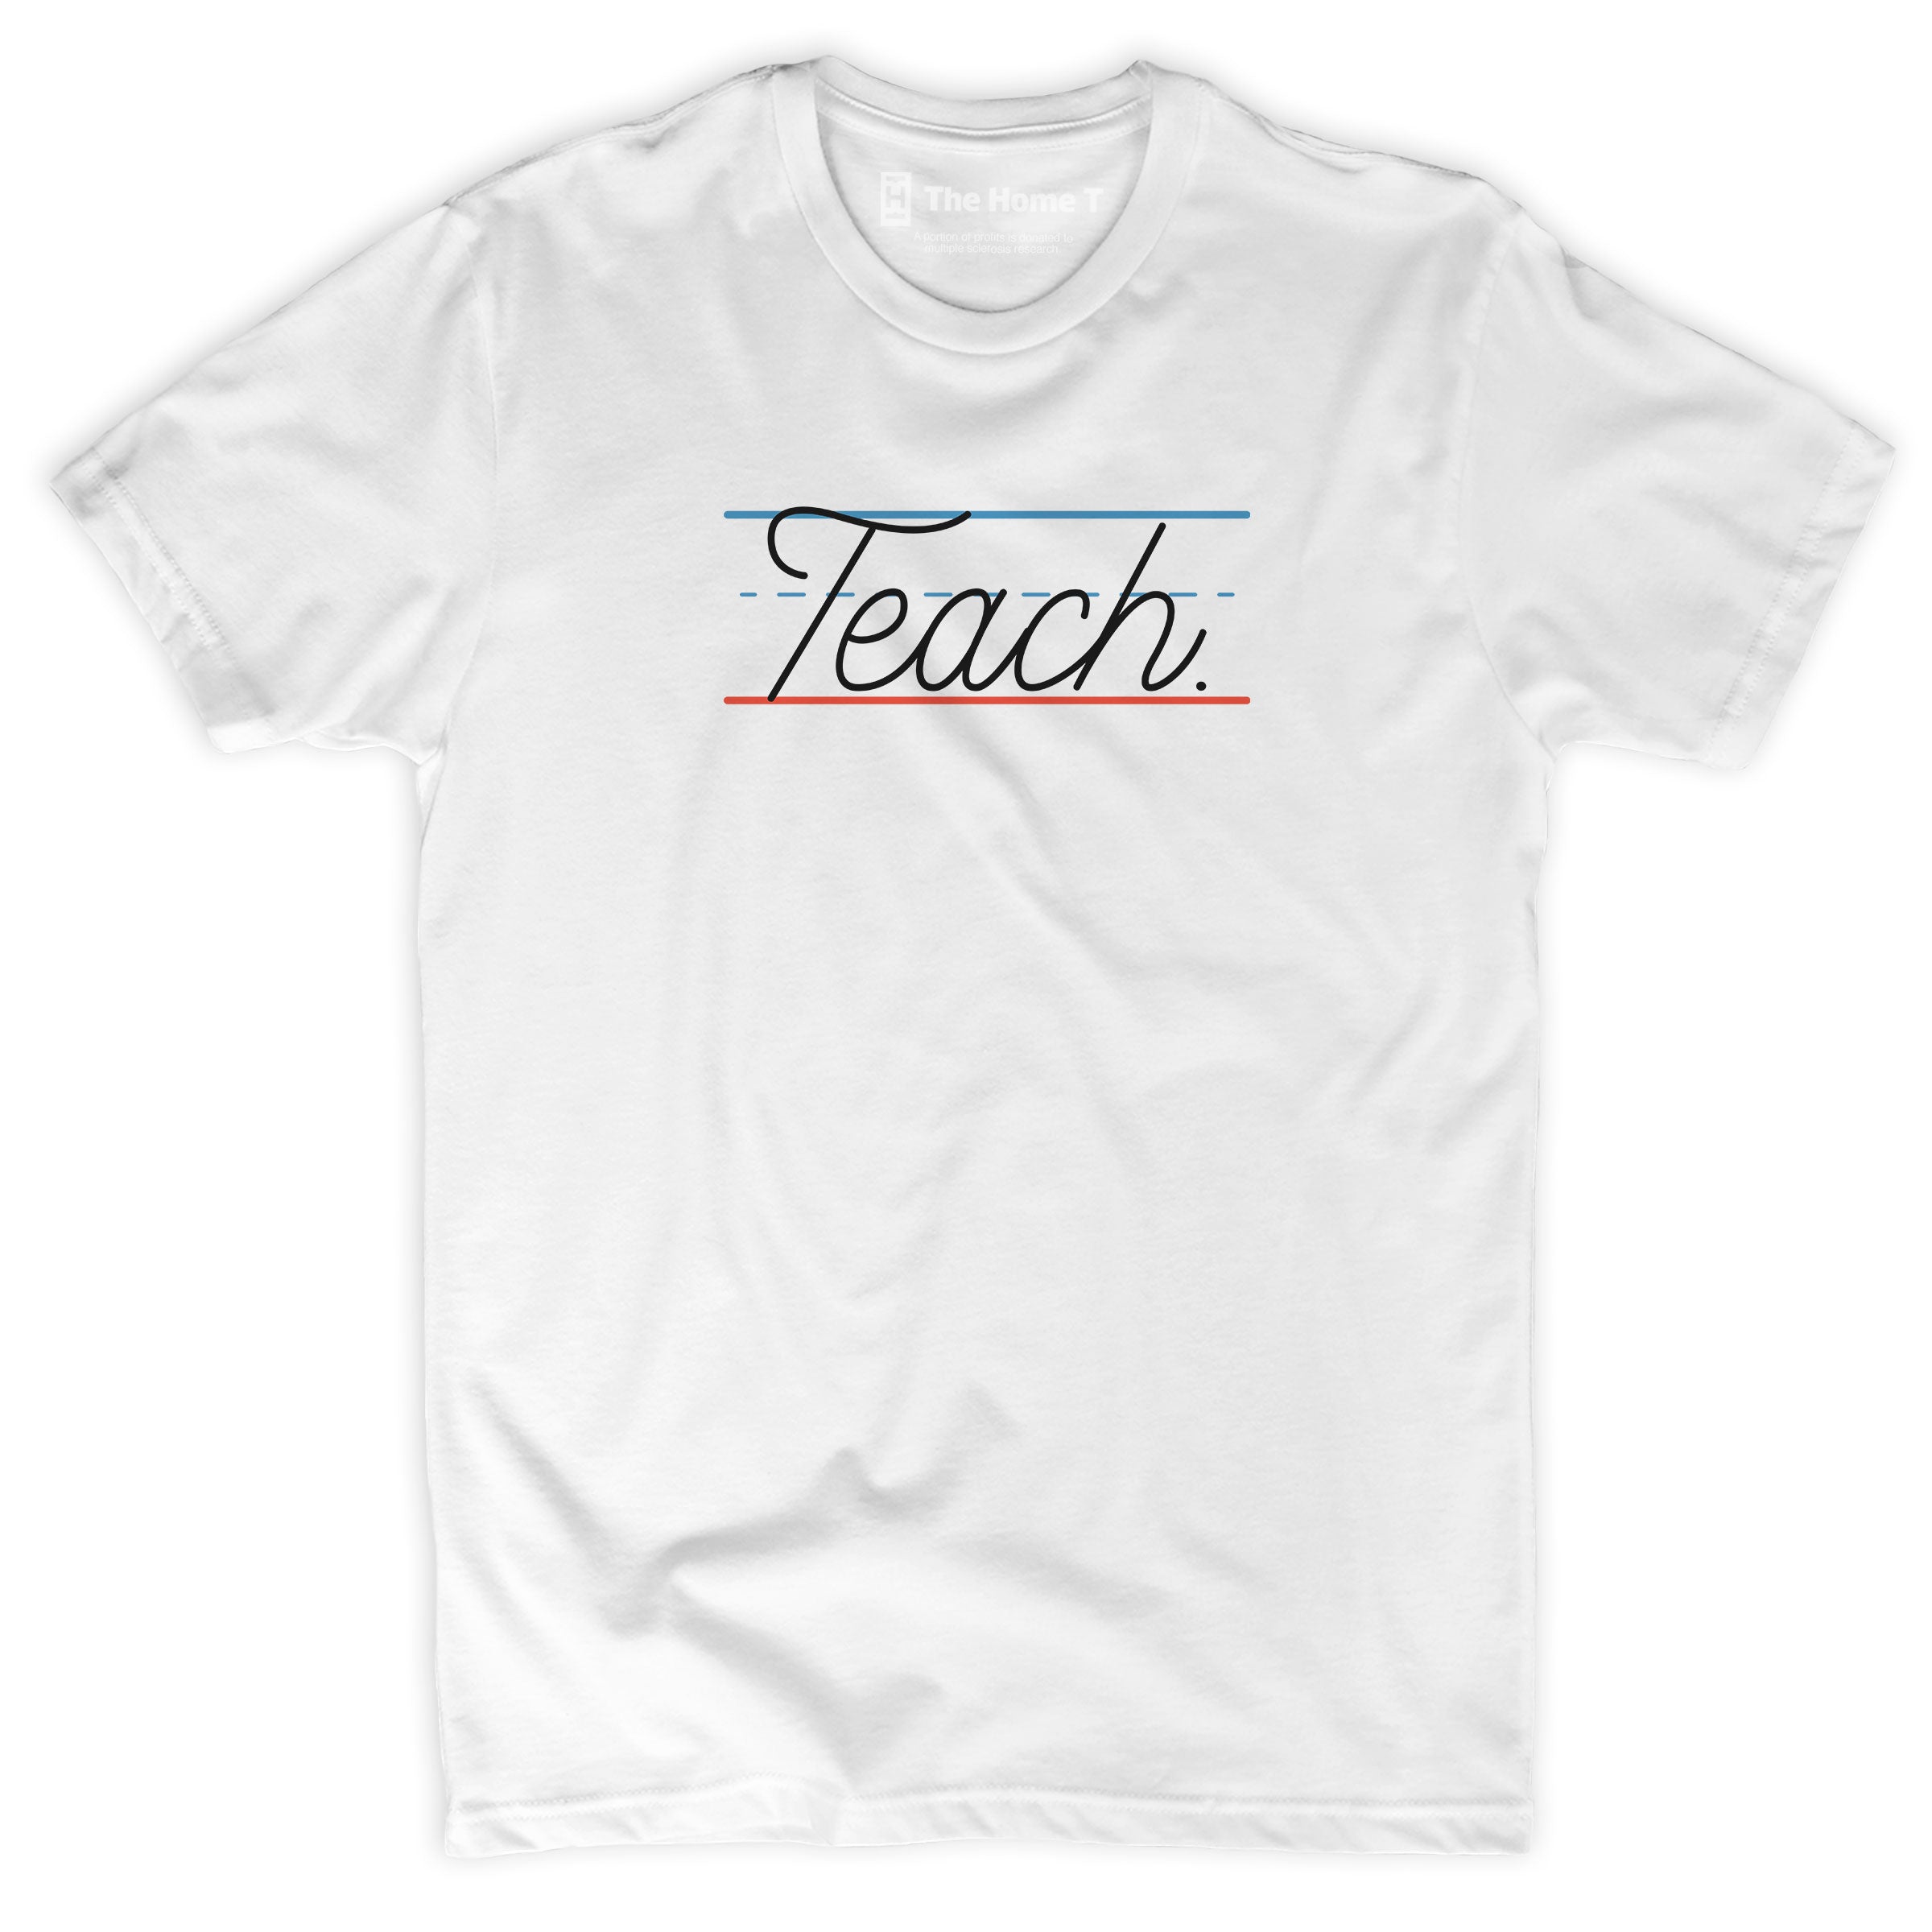 Teach.